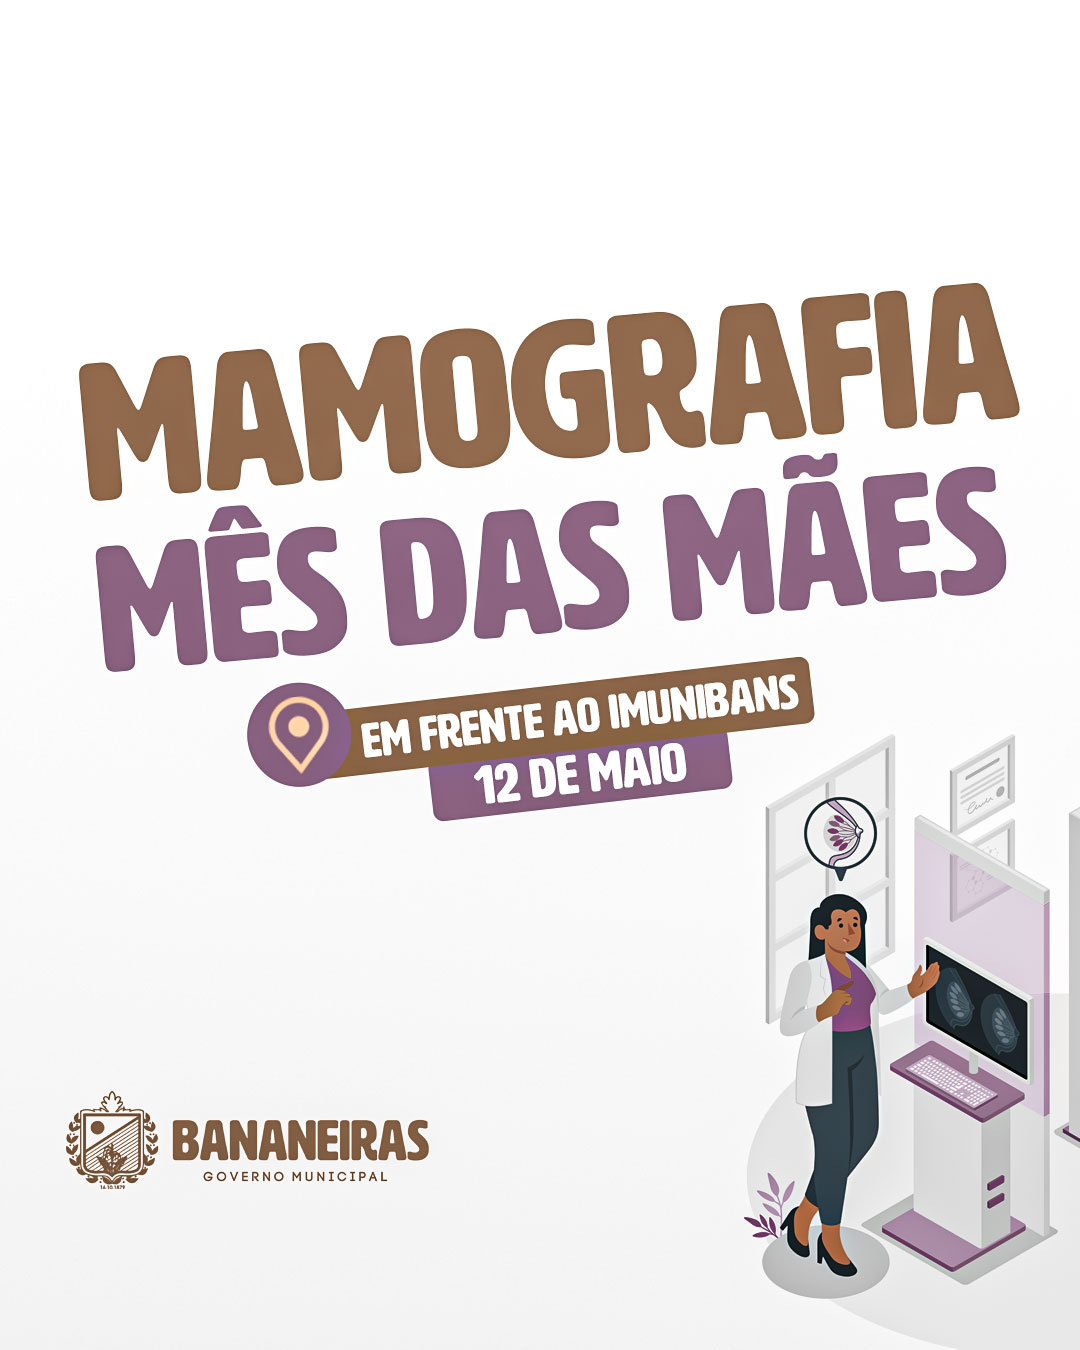 Secretaria de Saúde promoverá o “Dia da Mamografia” no próximo dia 12 de maio